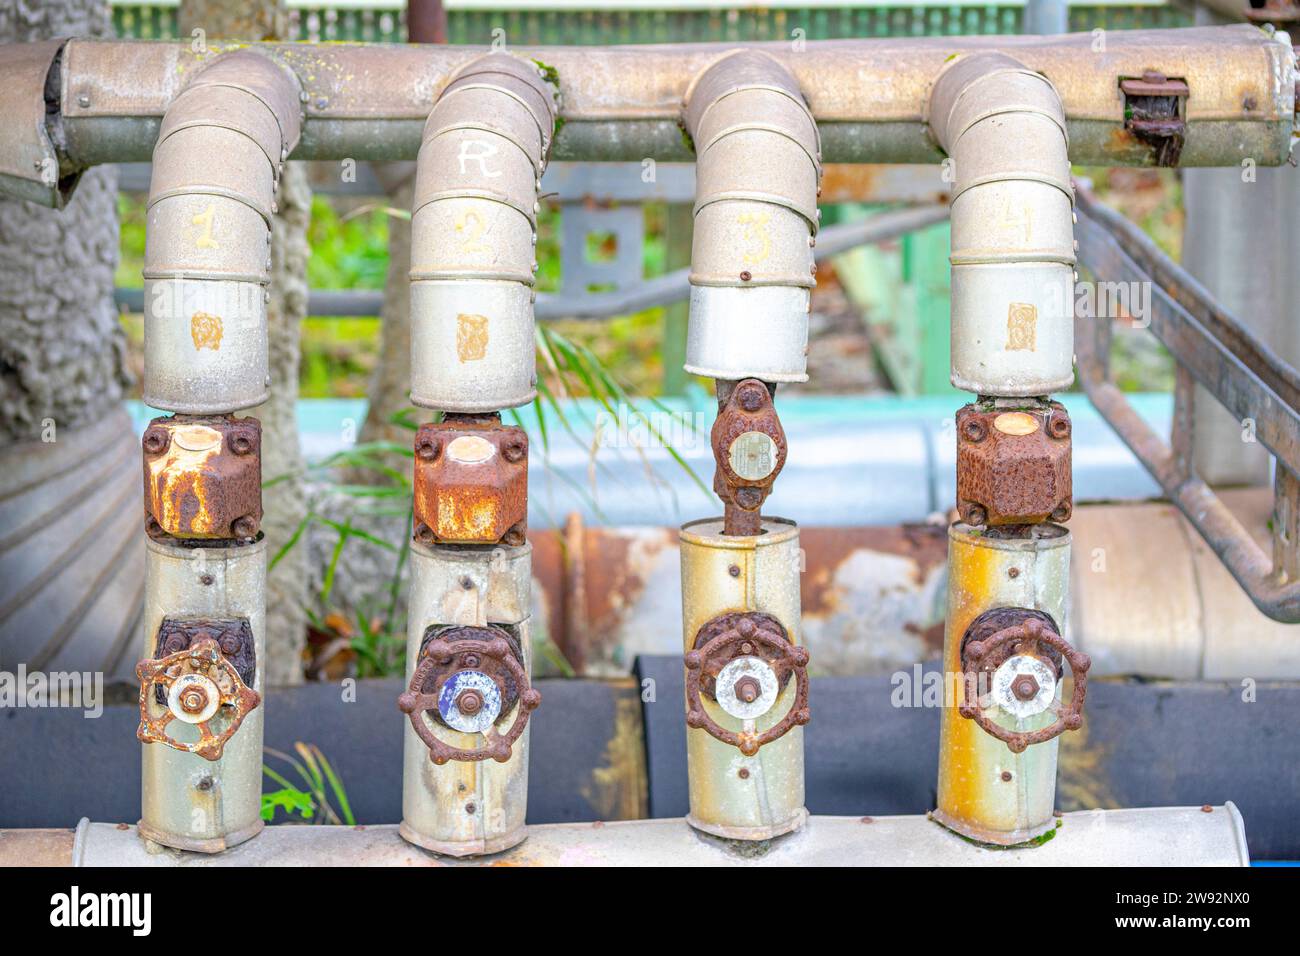 4 alte und rostige Armaturen in einer Chemiefabrik. Stockfoto